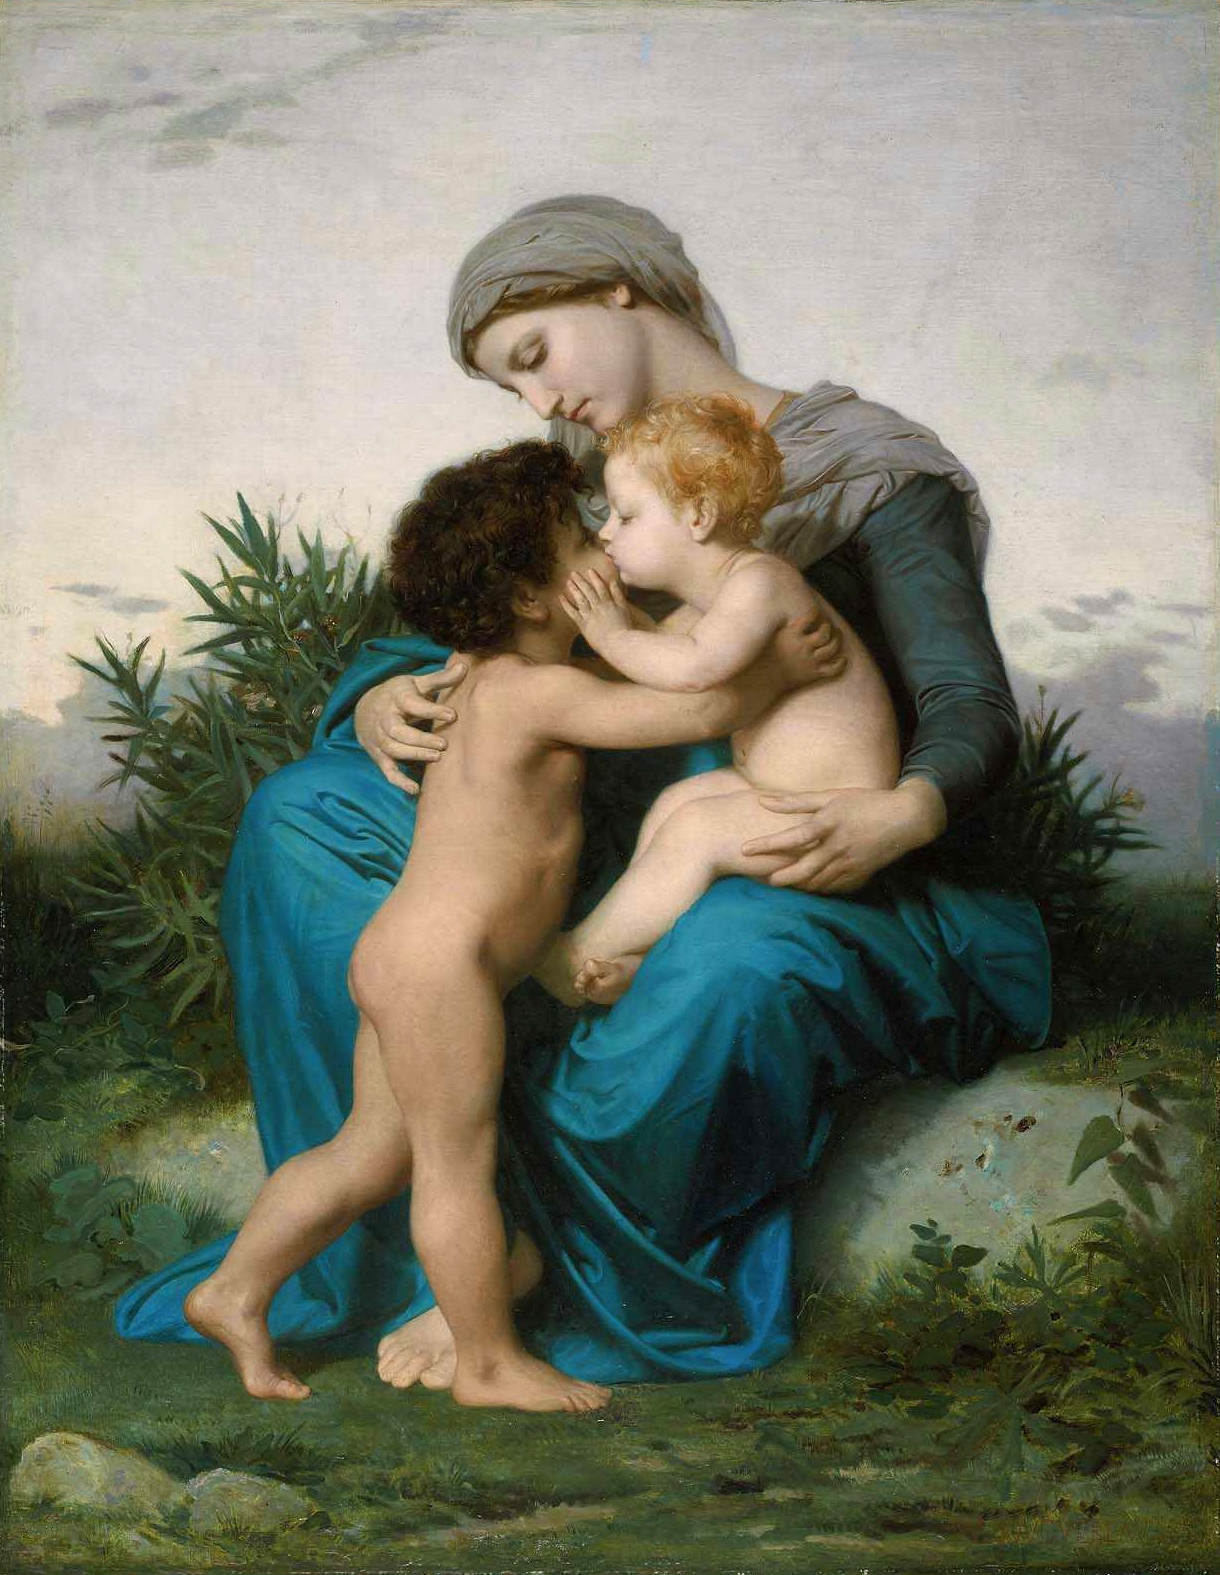 Адольф Вильям Бугро. "Братская любовь". 1851. Музей изобразительных искусств, Бостон.